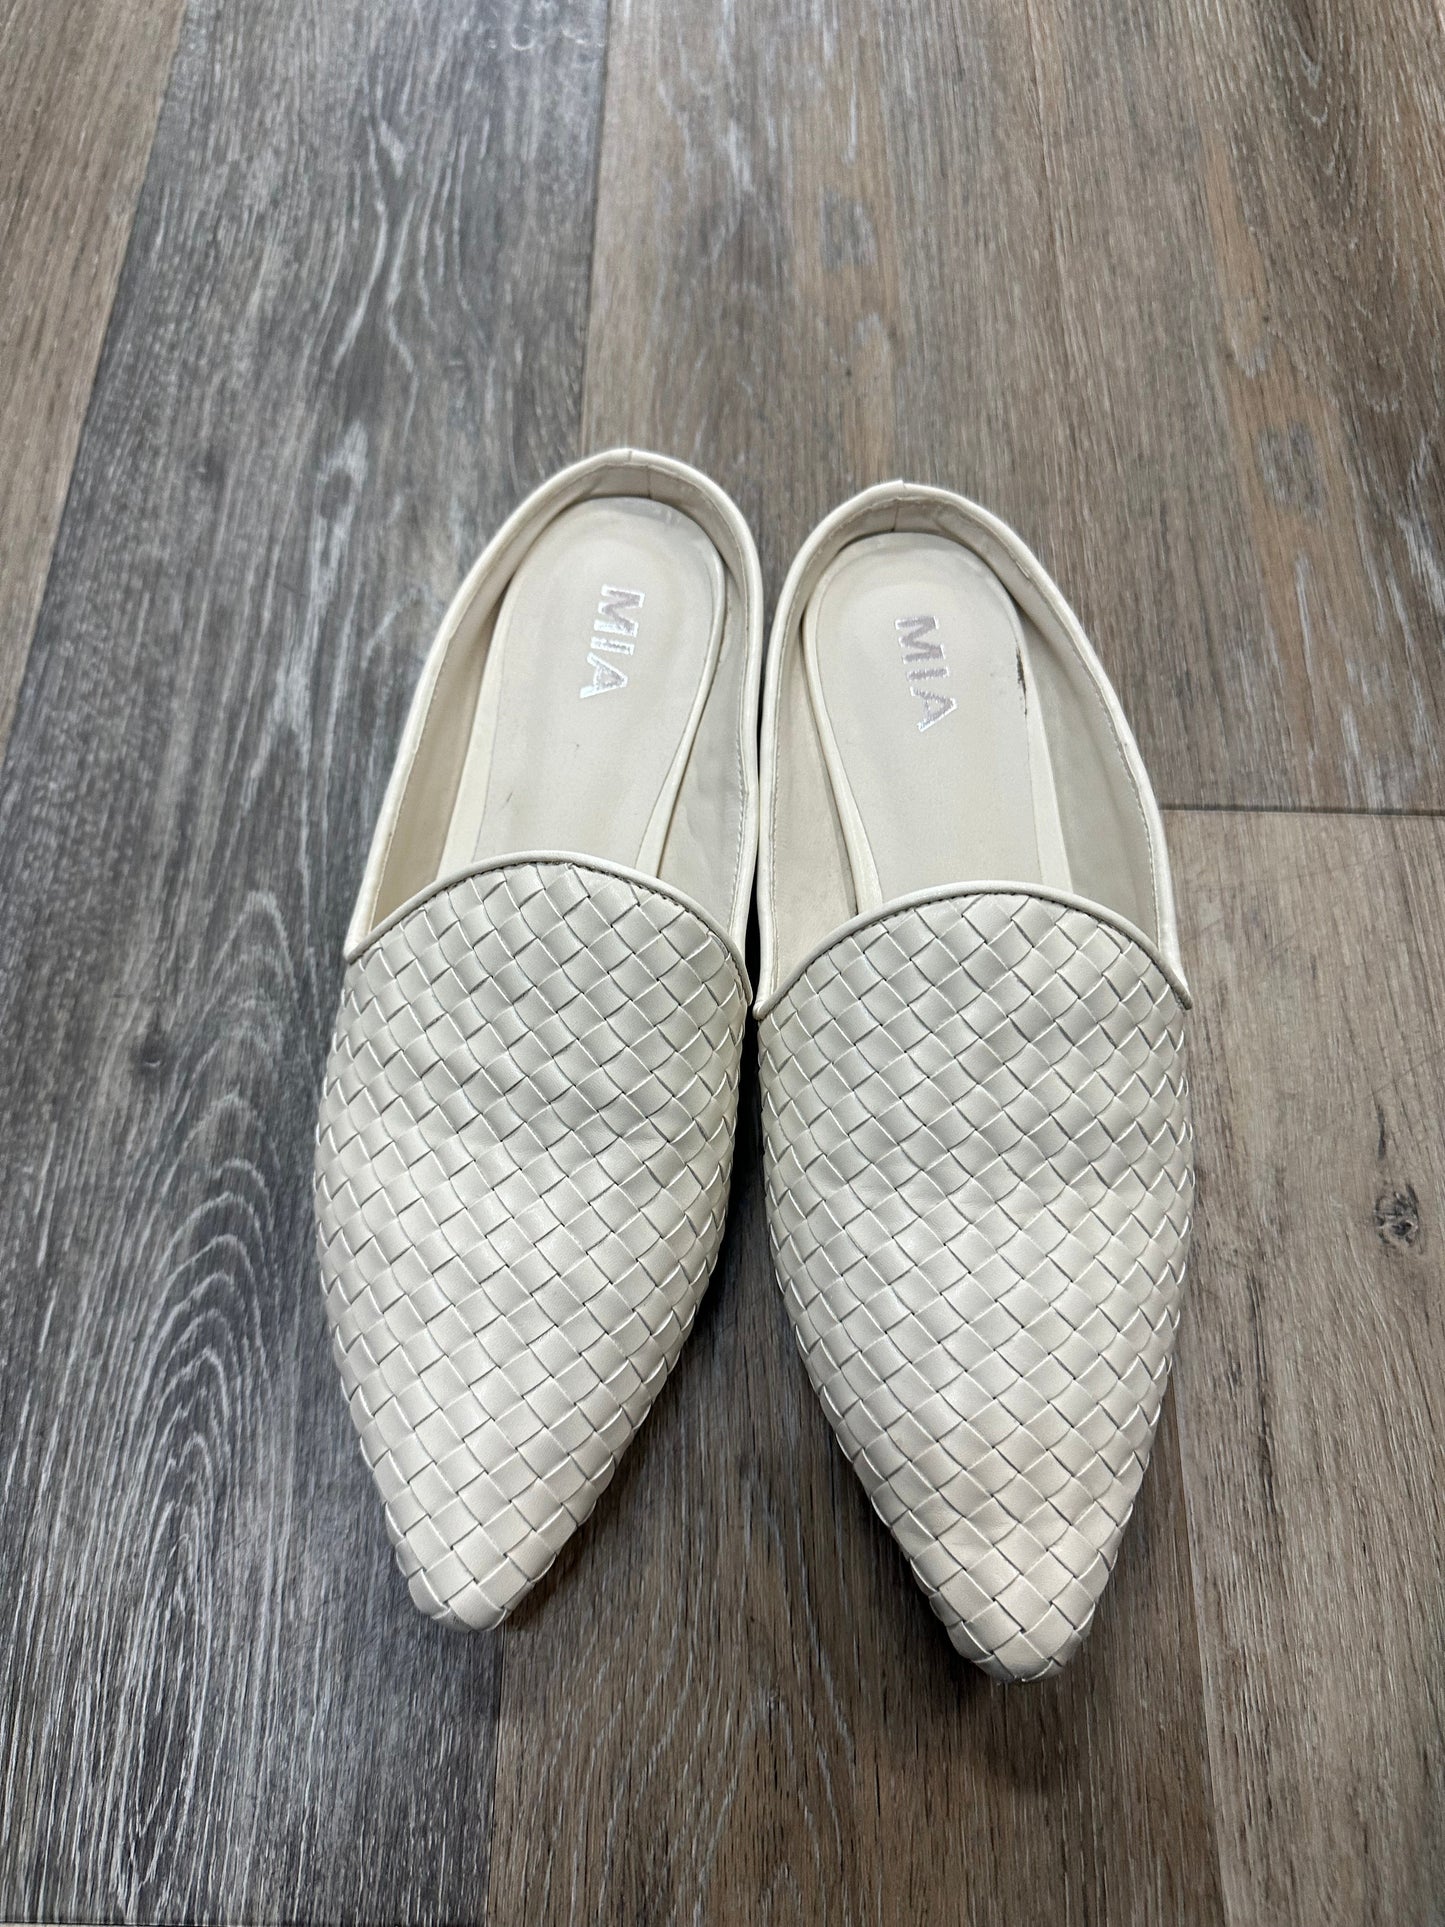 White Shoes Flats Mia, Size 10